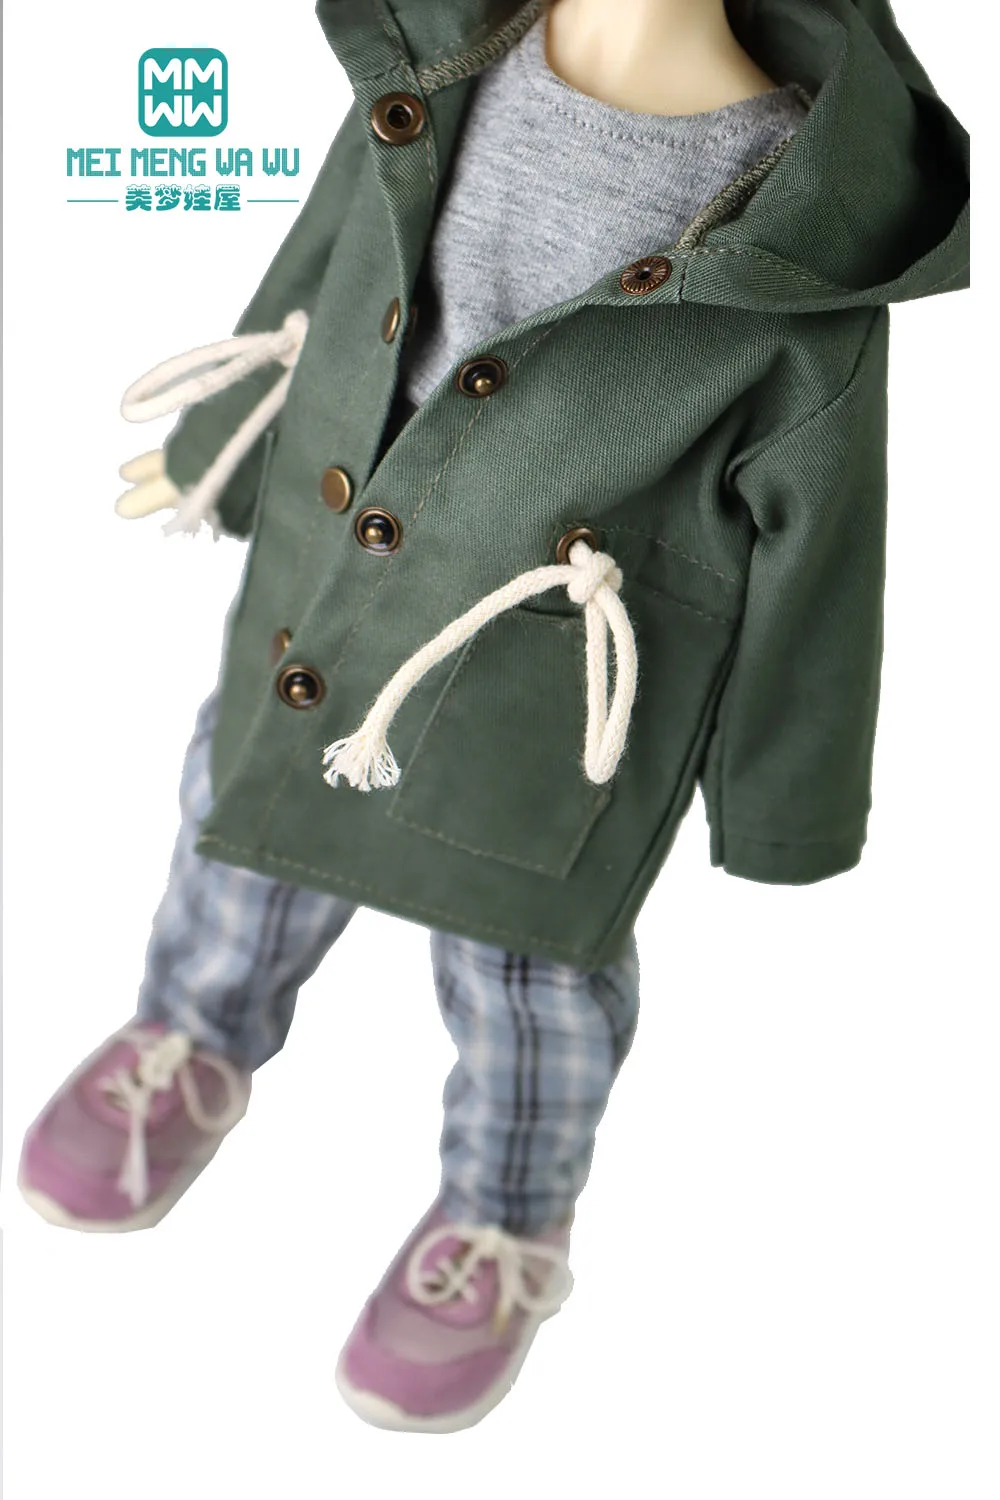 BJD bonecas acessórios de roupas para a boneca se encaixa 27cm-30cm 1/6 MYOU YOSD Articulada boneca de blusão com Capuz, calças axadrezadas